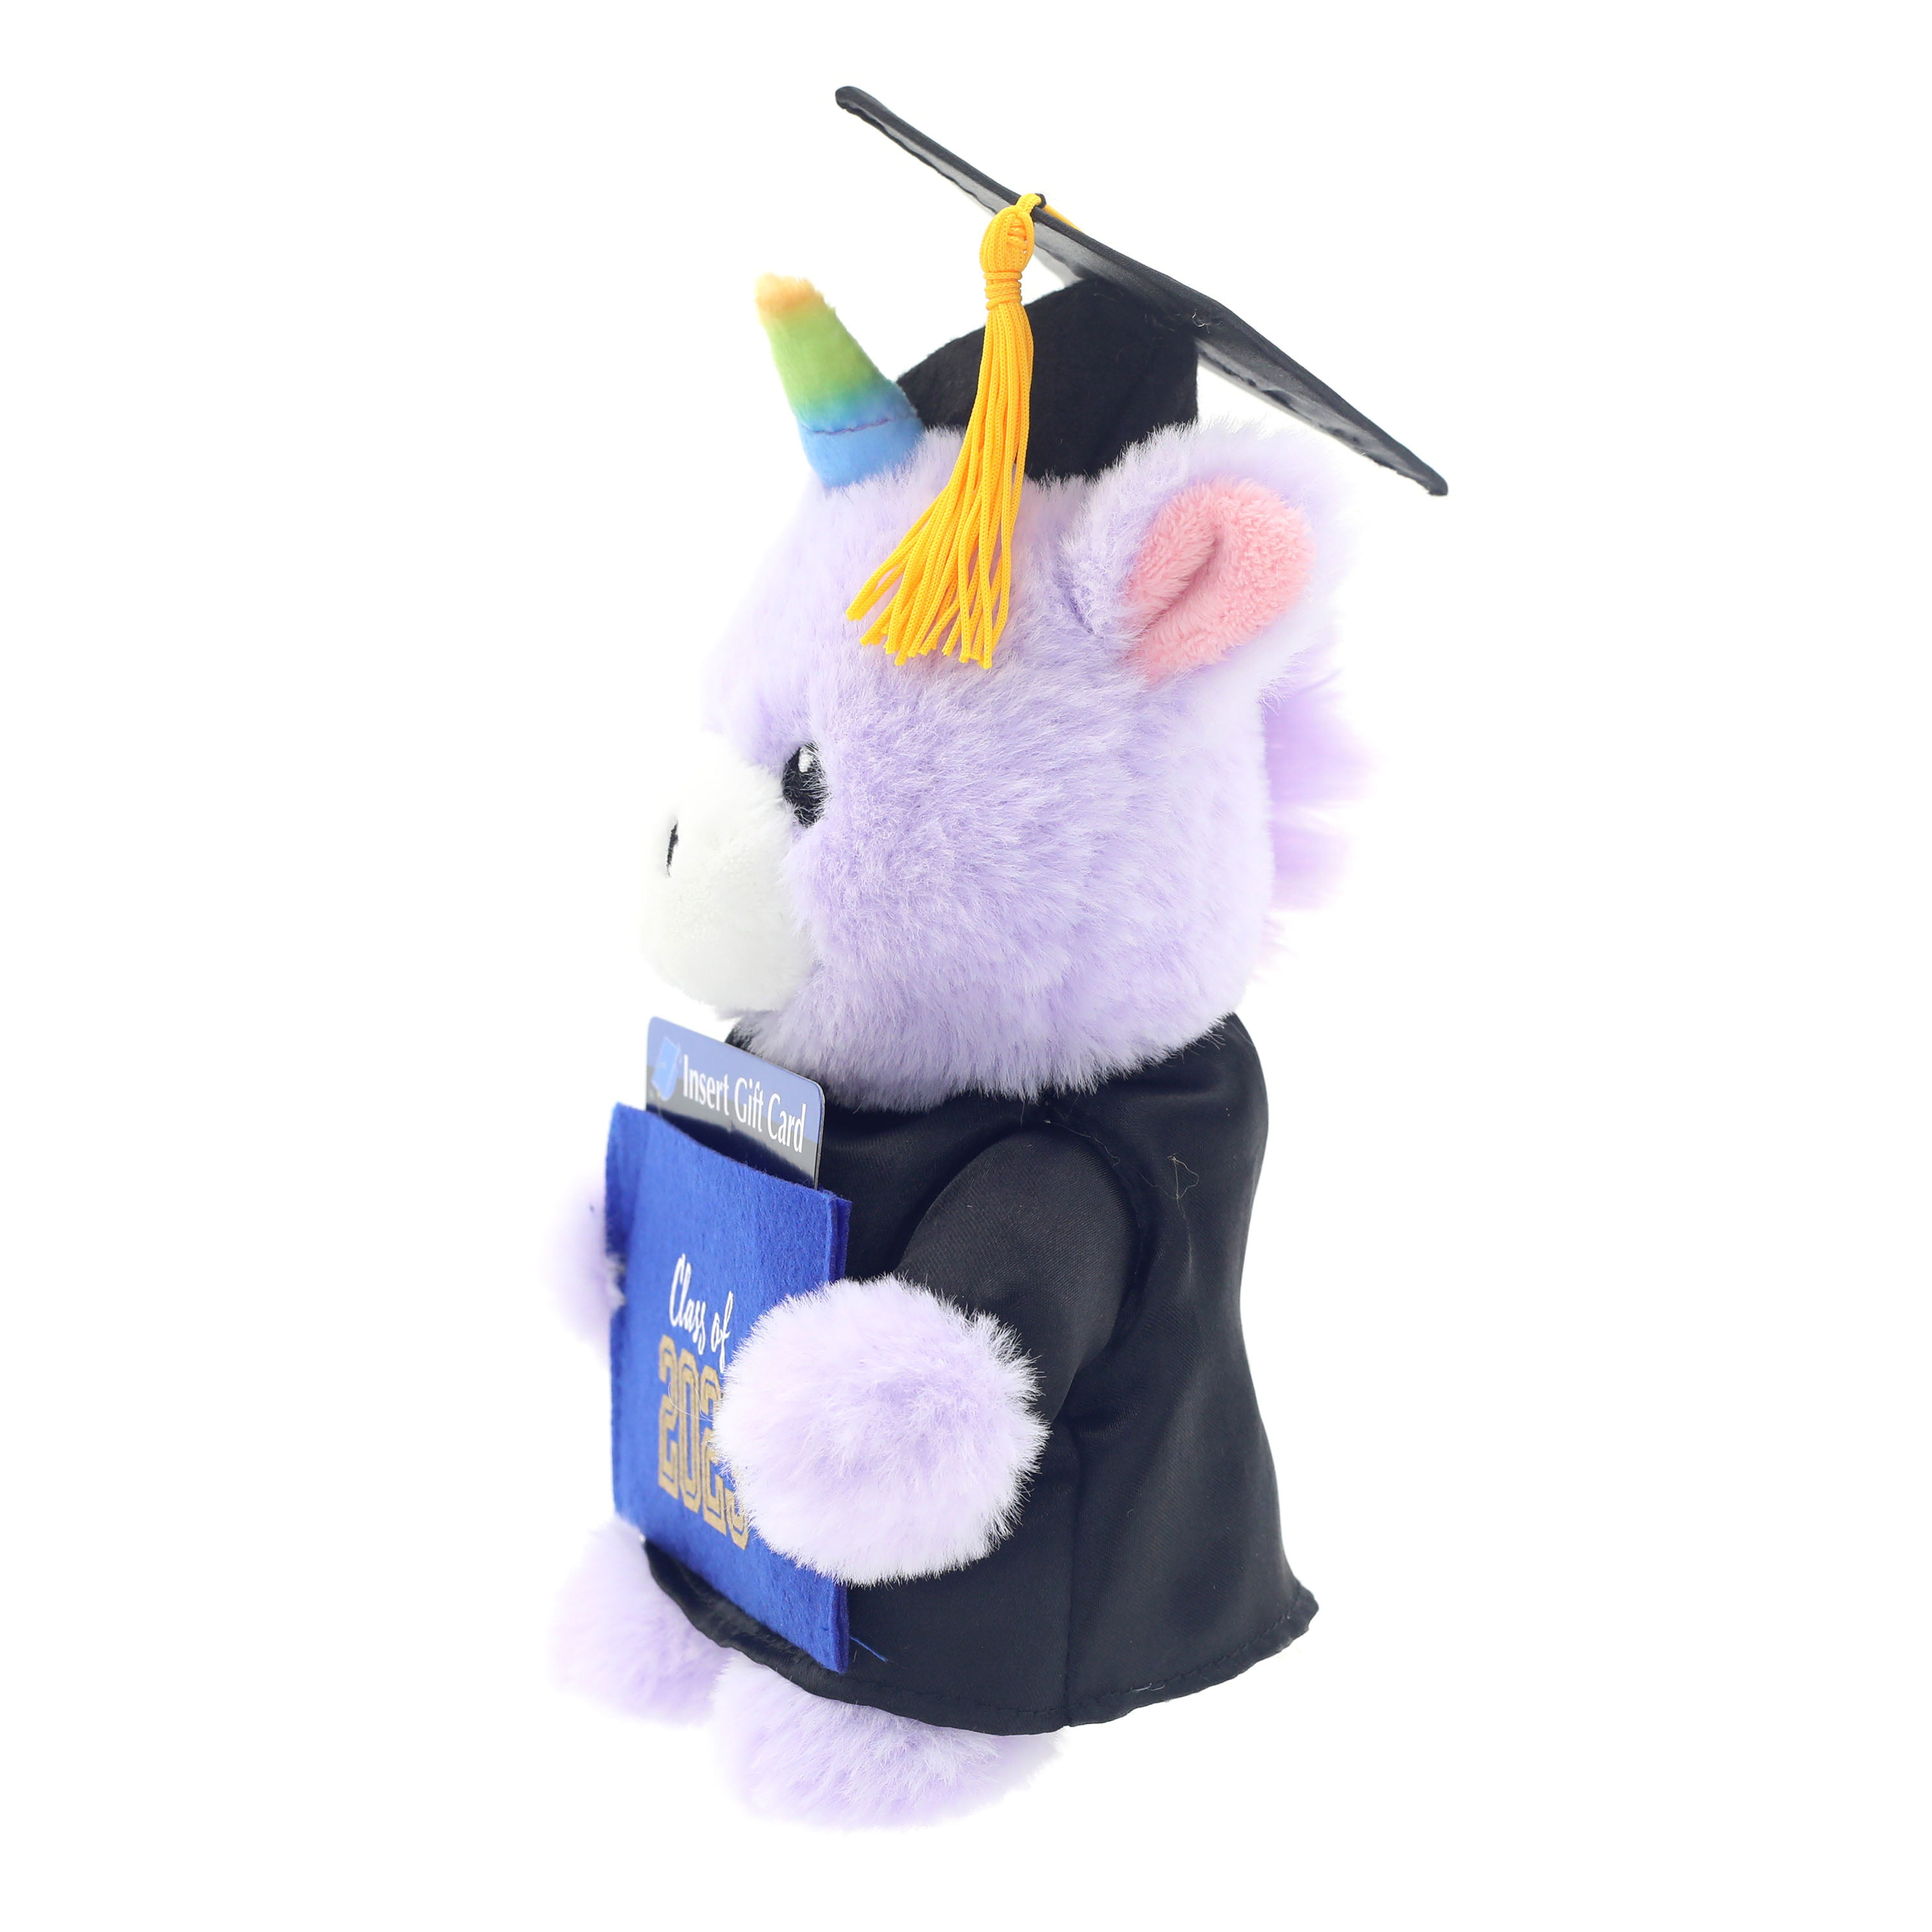 NEW - Way To Celebrate Graduation 9 Singing Unicorn Plush Animal